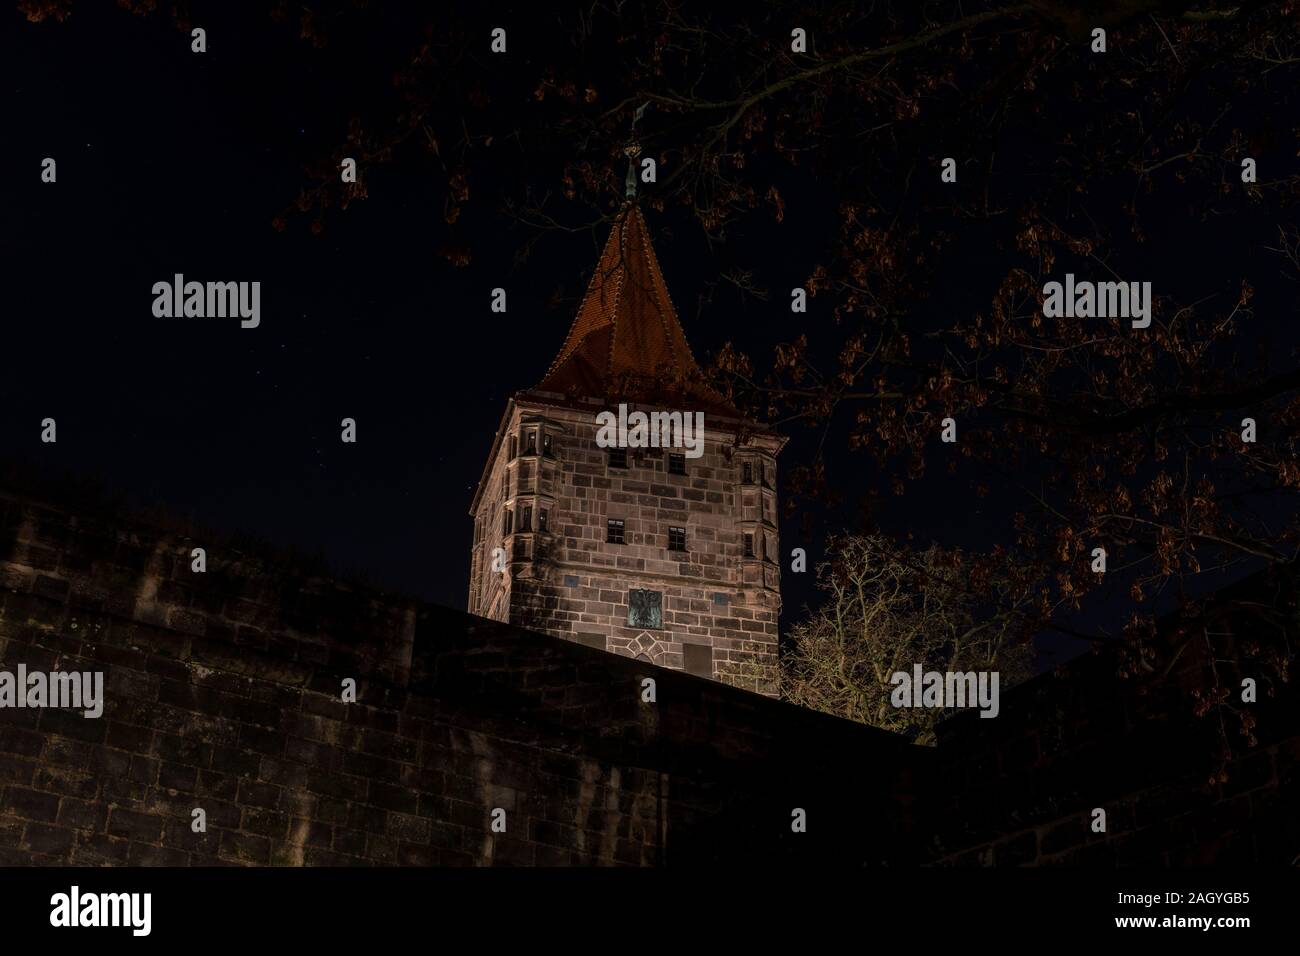 Castillo imperial de Nuremberg es uno de los muchos lugares emblemáticos de la ciudad. Está situado en una colina con vistas a la ciudad. Es nocturno iluminado de forma espectacular. Foto de stock